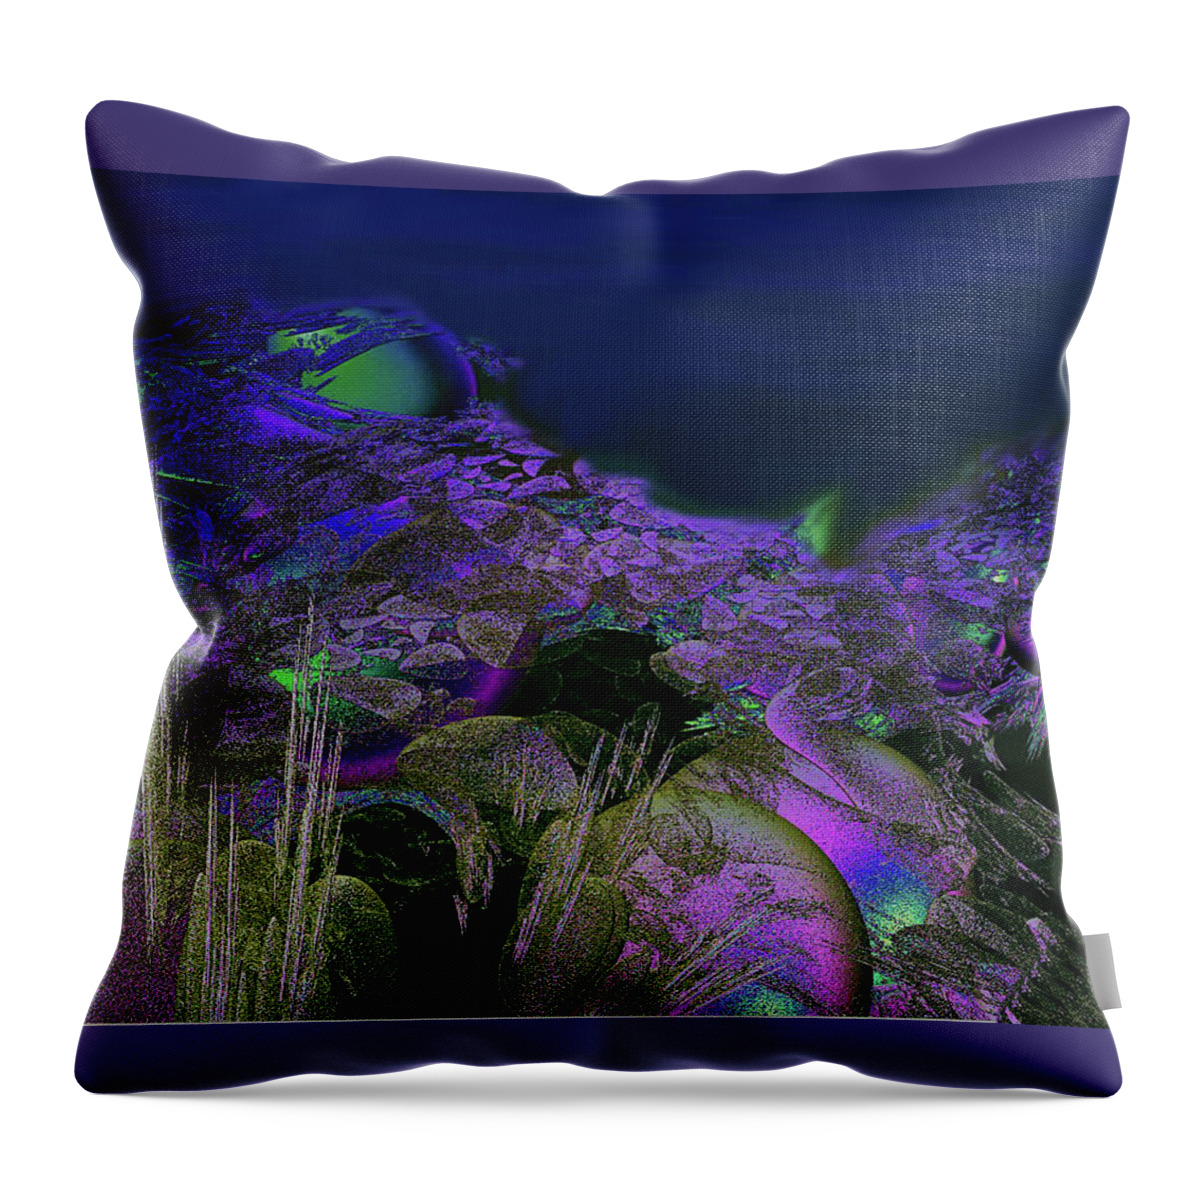 Ocean Throw Pillow featuring the digital art Ocean Floor by Julie Grace